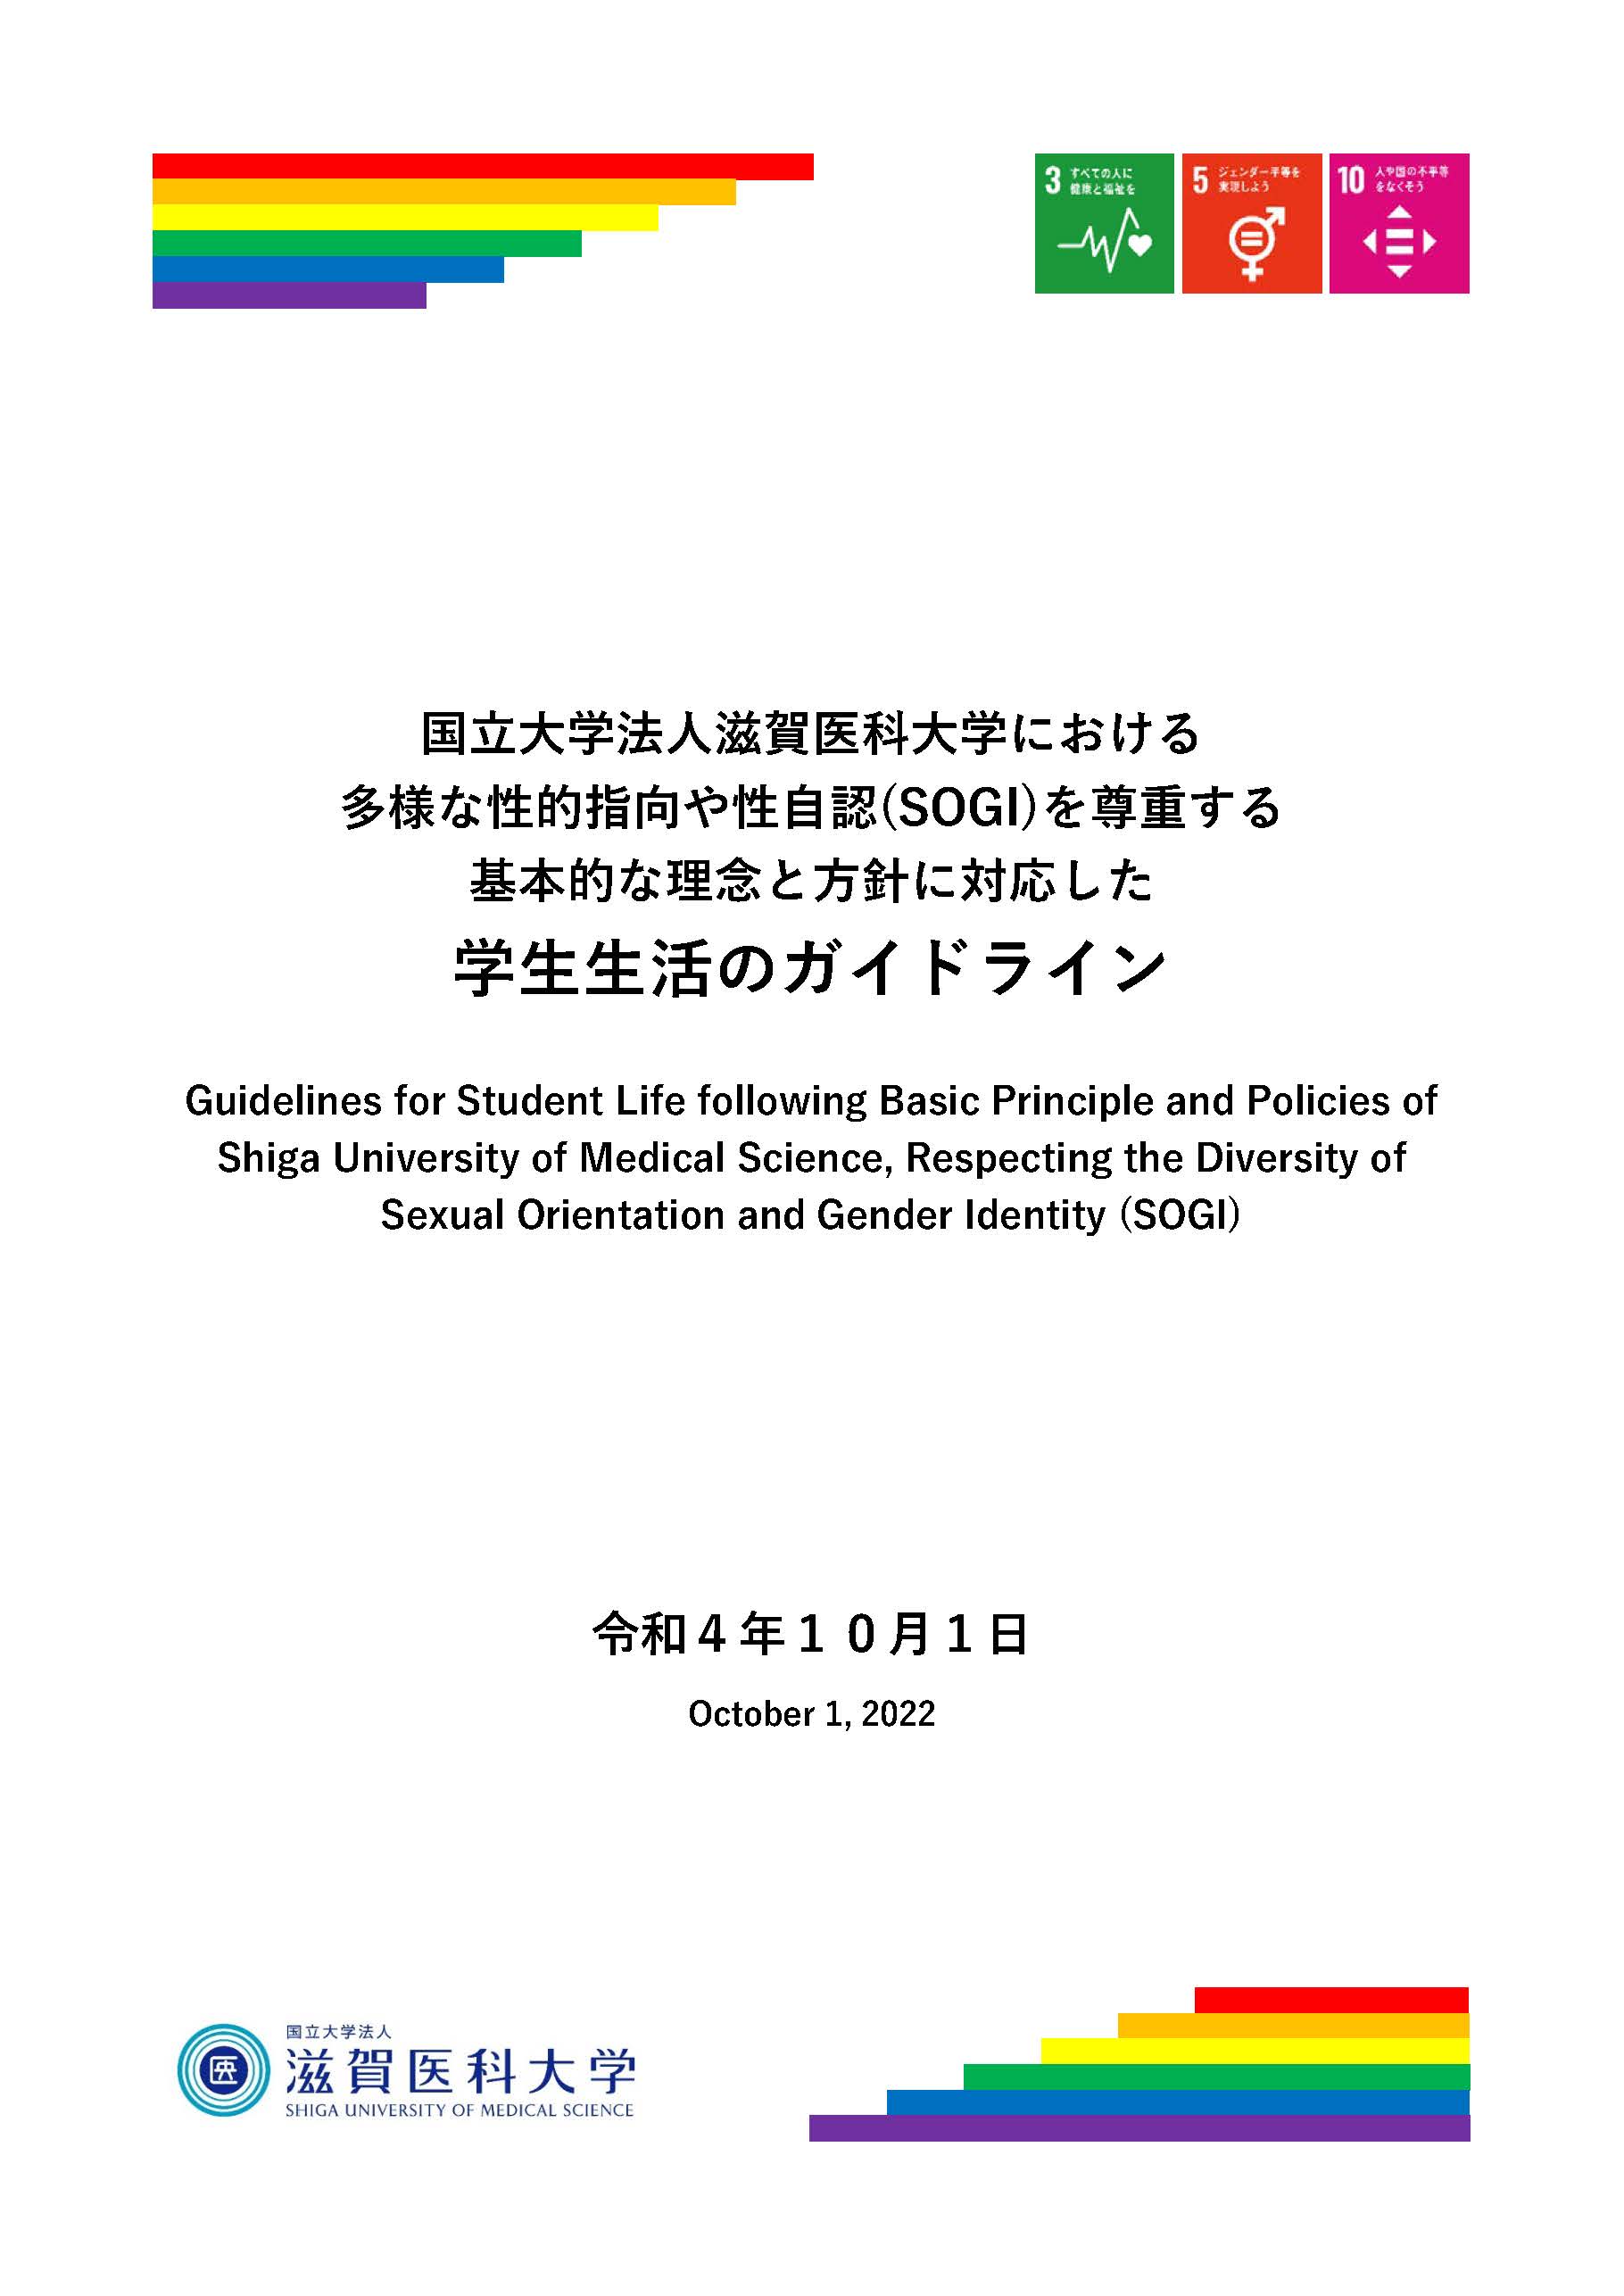 国立大学法人老虎机游戏における多様な性的指向や性自認（SOGI）を尊重する基本的な理念と方針に対応した学生生活のガイドライン